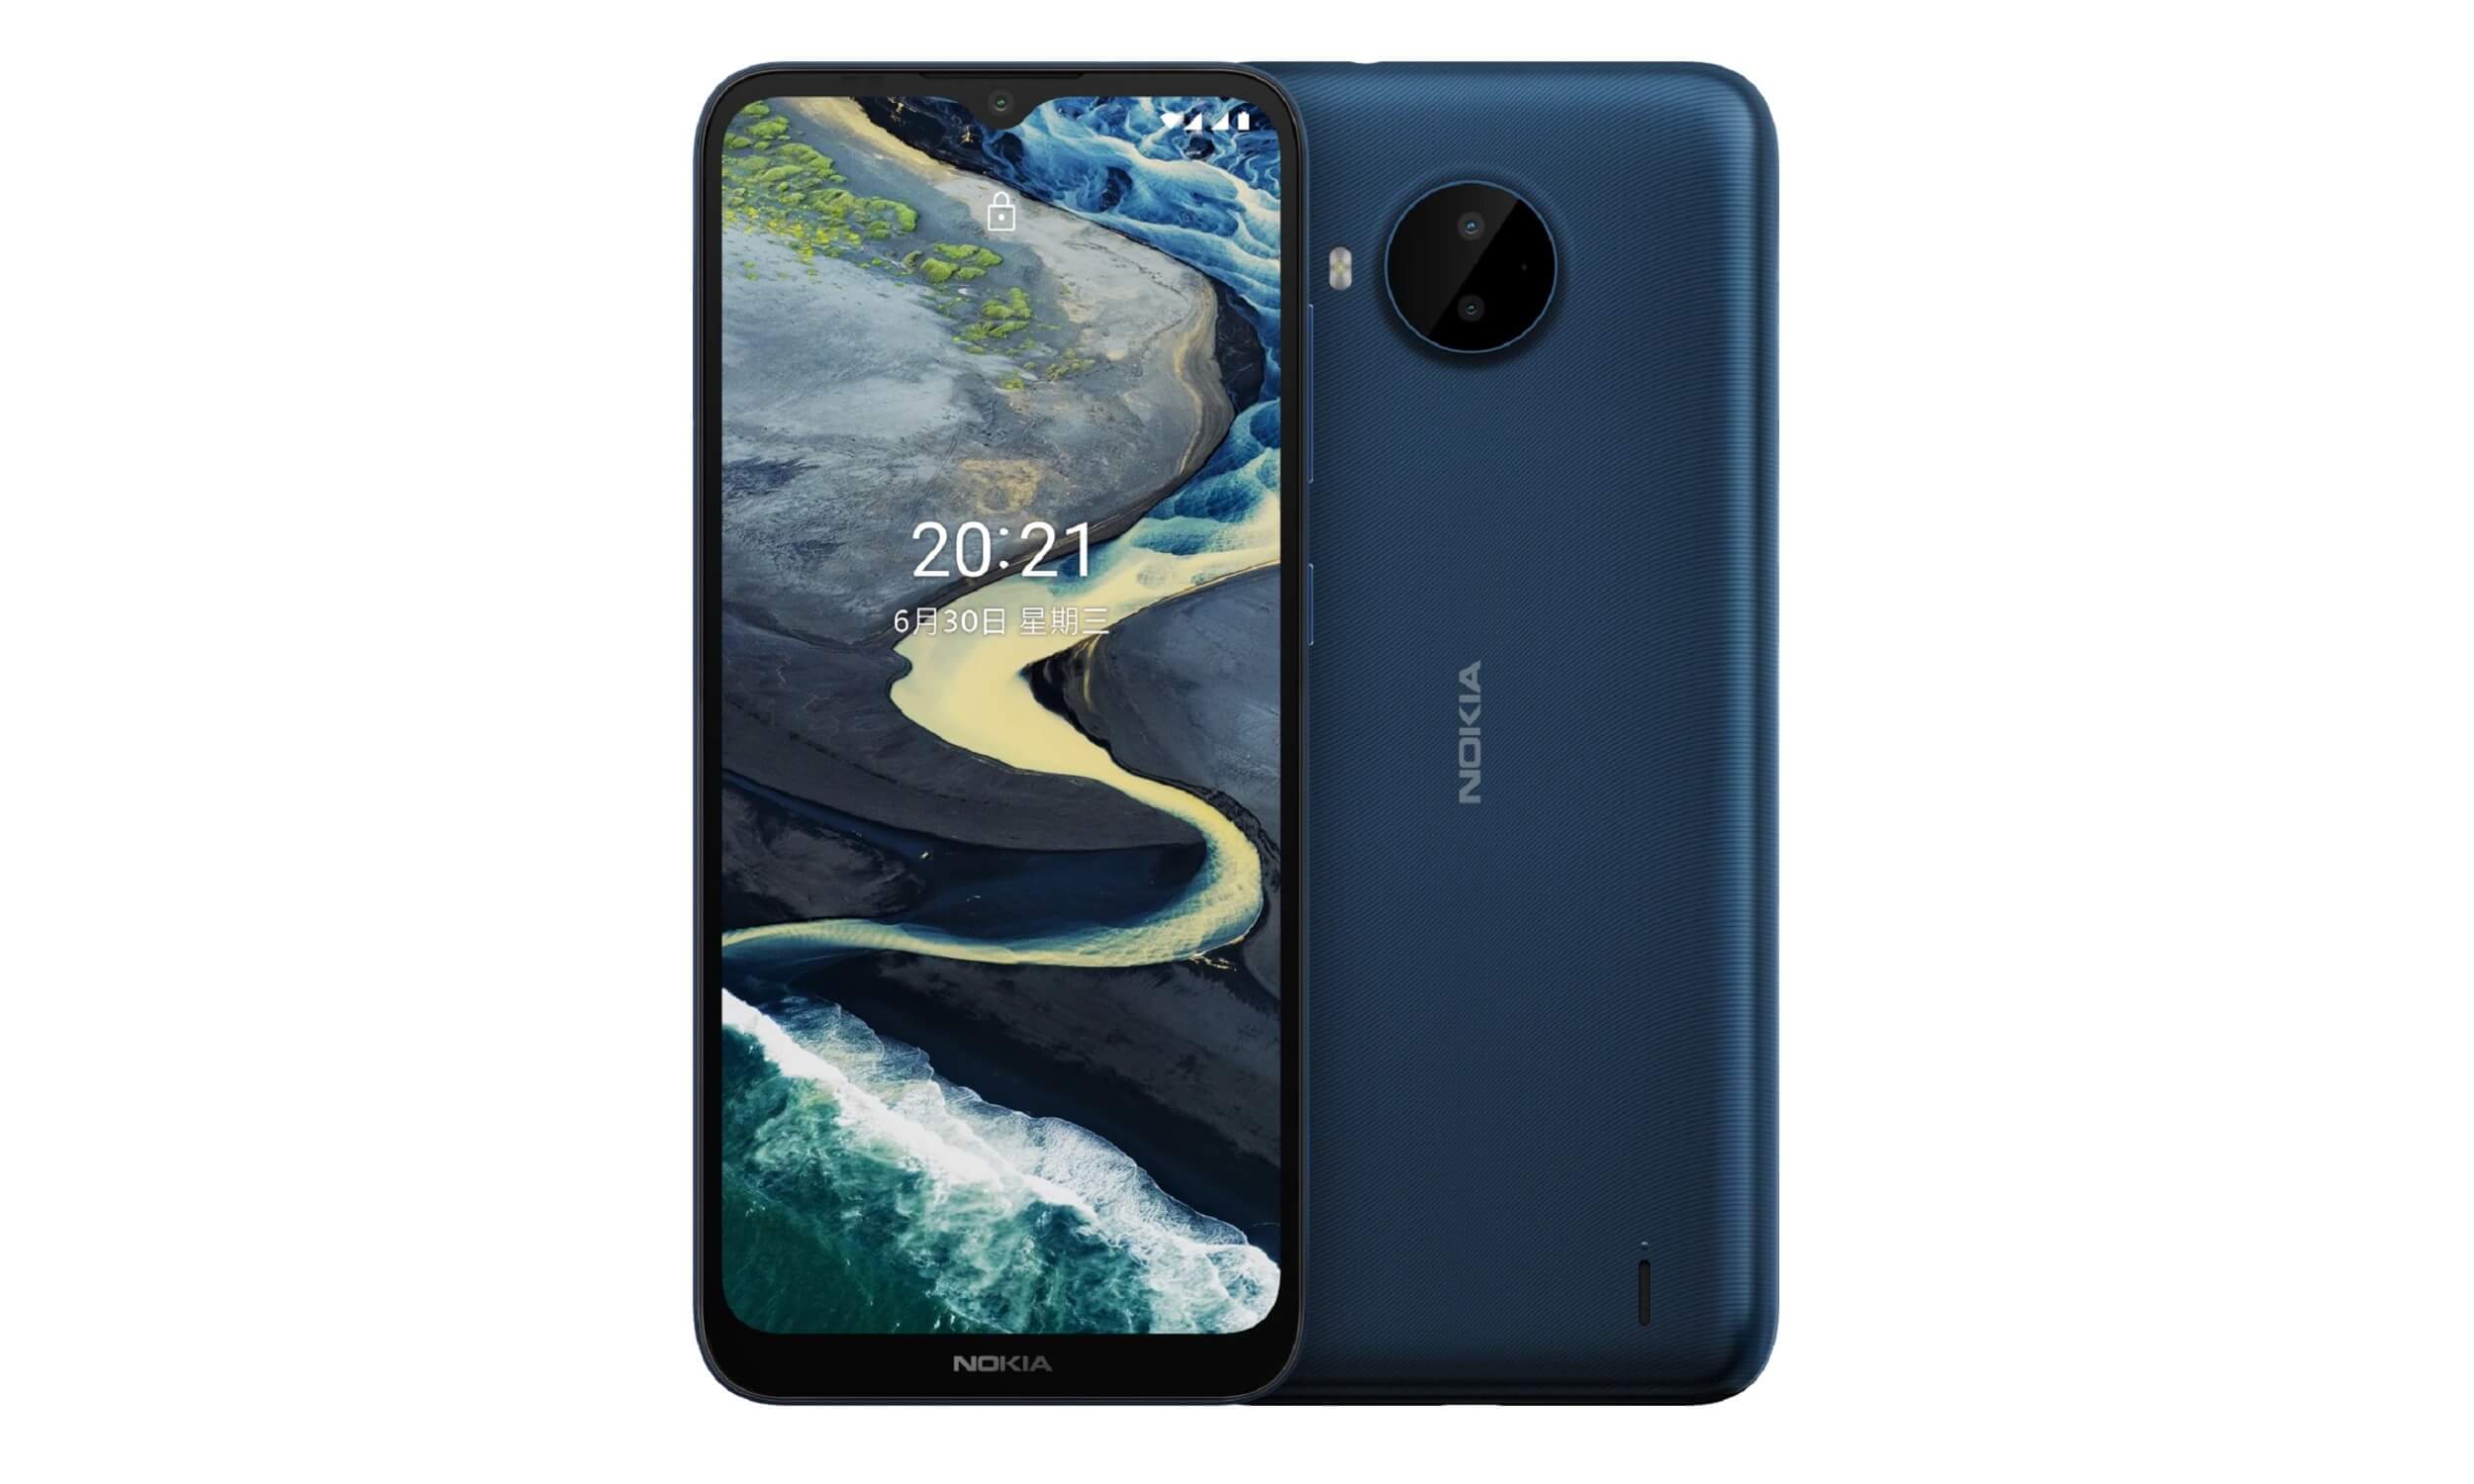 Представлен Nokia C20 Plus на Android 11 (Go Edition) за $110